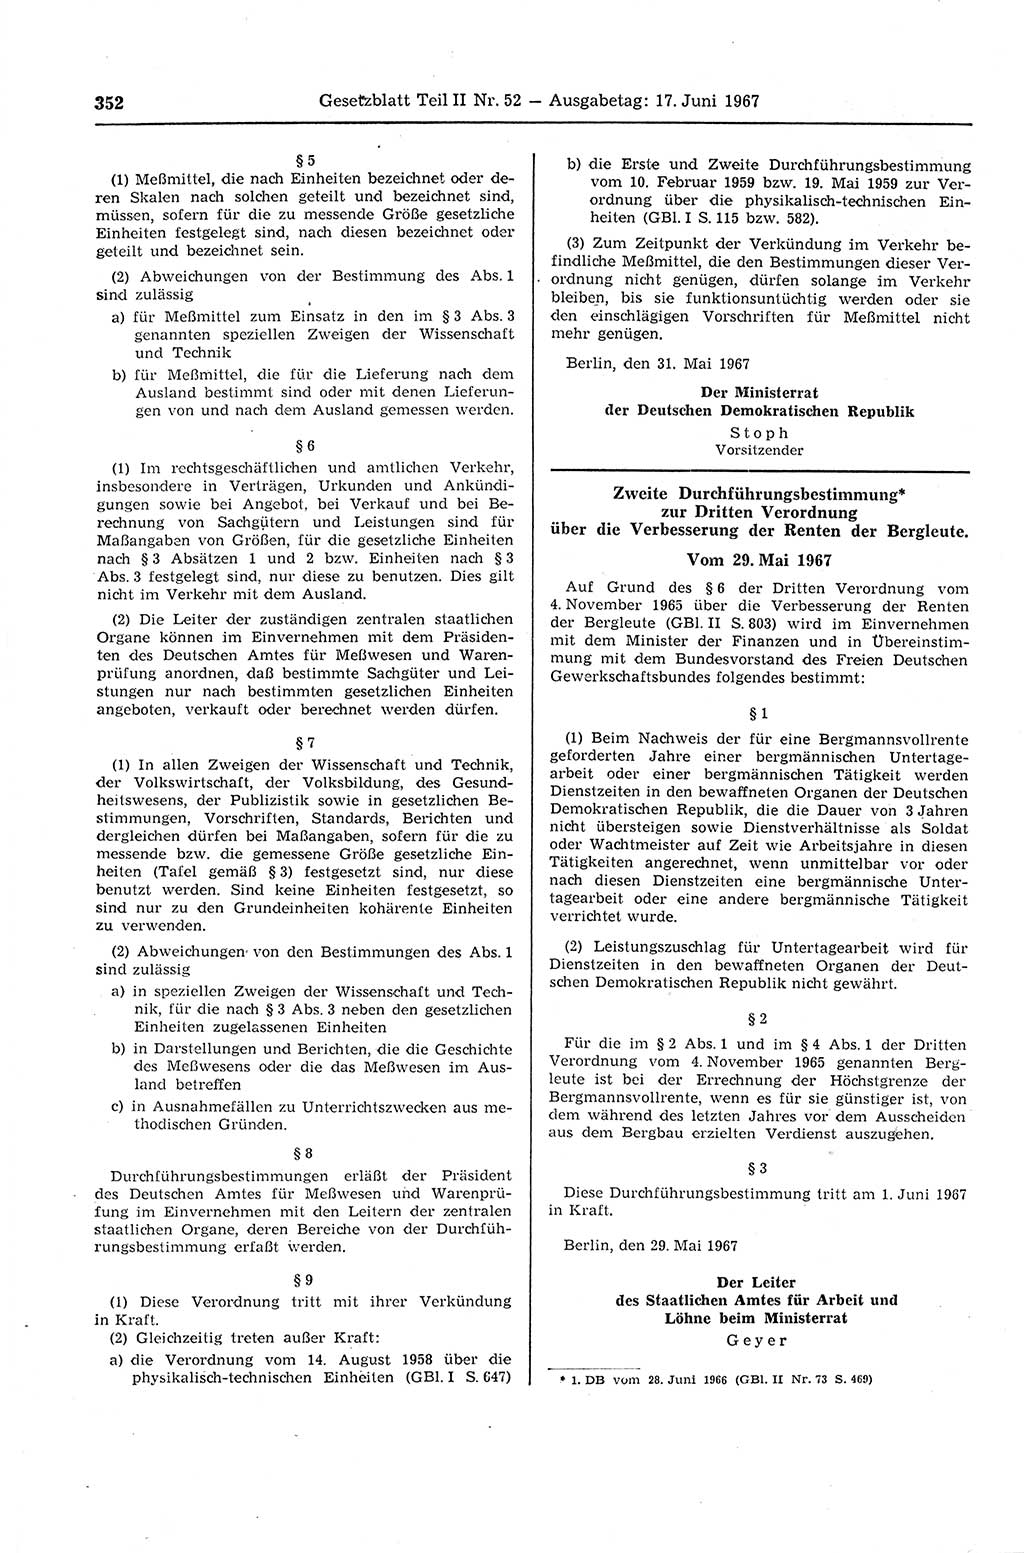 Gesetzblatt (GBl.) der Deutschen Demokratischen Republik (DDR) Teil ⅠⅠ 1967, Seite 352 (GBl. DDR ⅠⅠ 1967, S. 352)